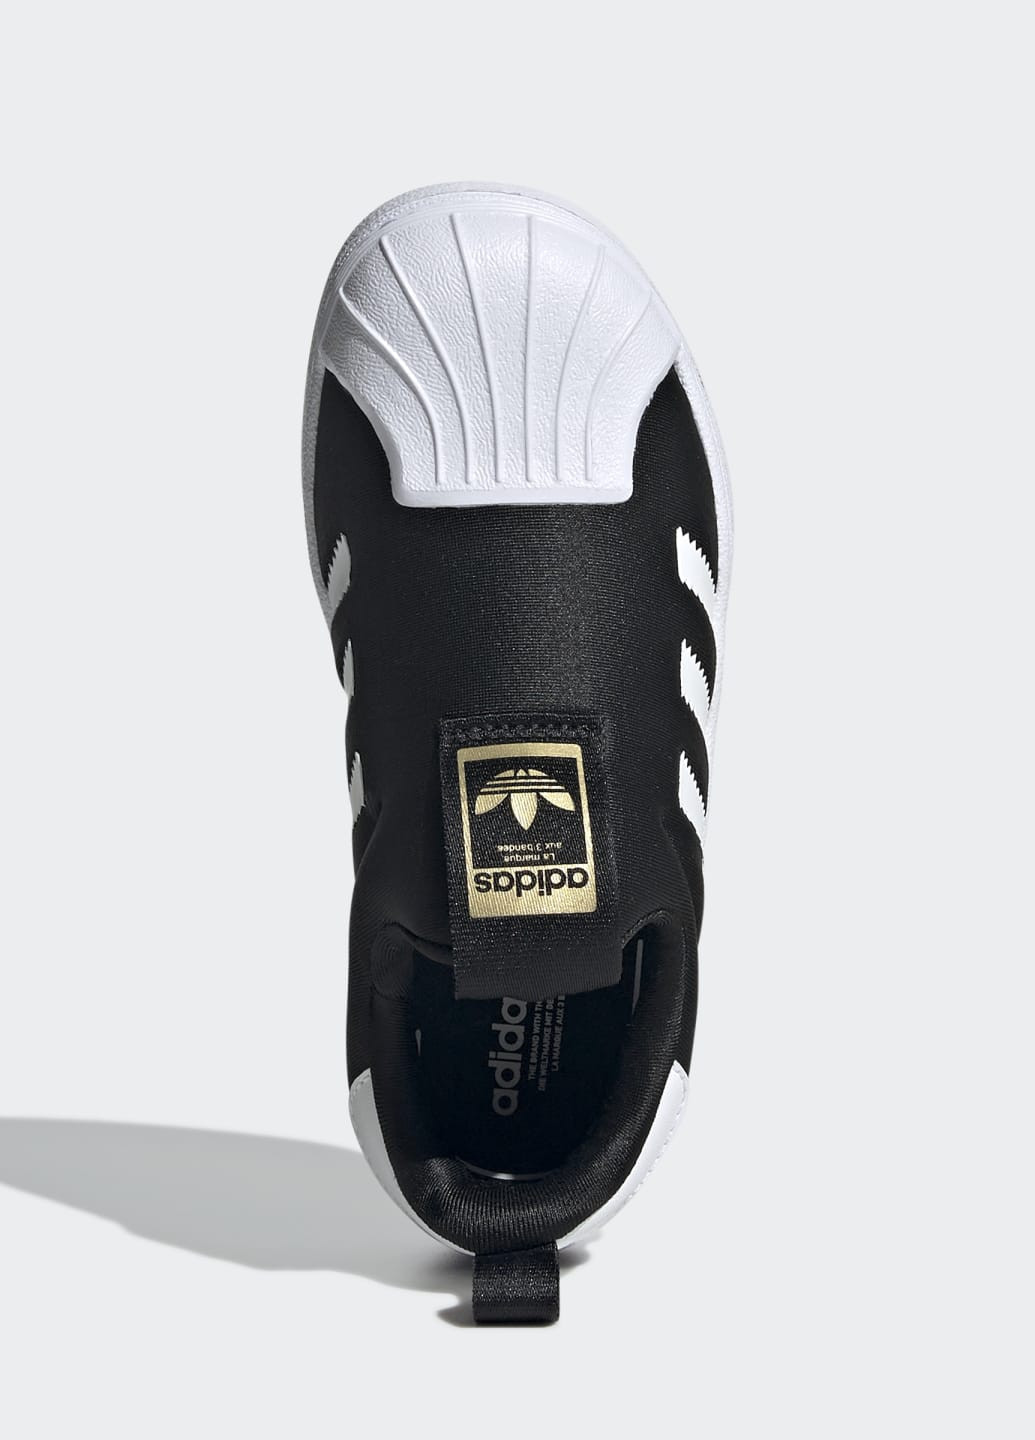 Чорні всесезонні кросівки-сліпони superstar 360 adidas